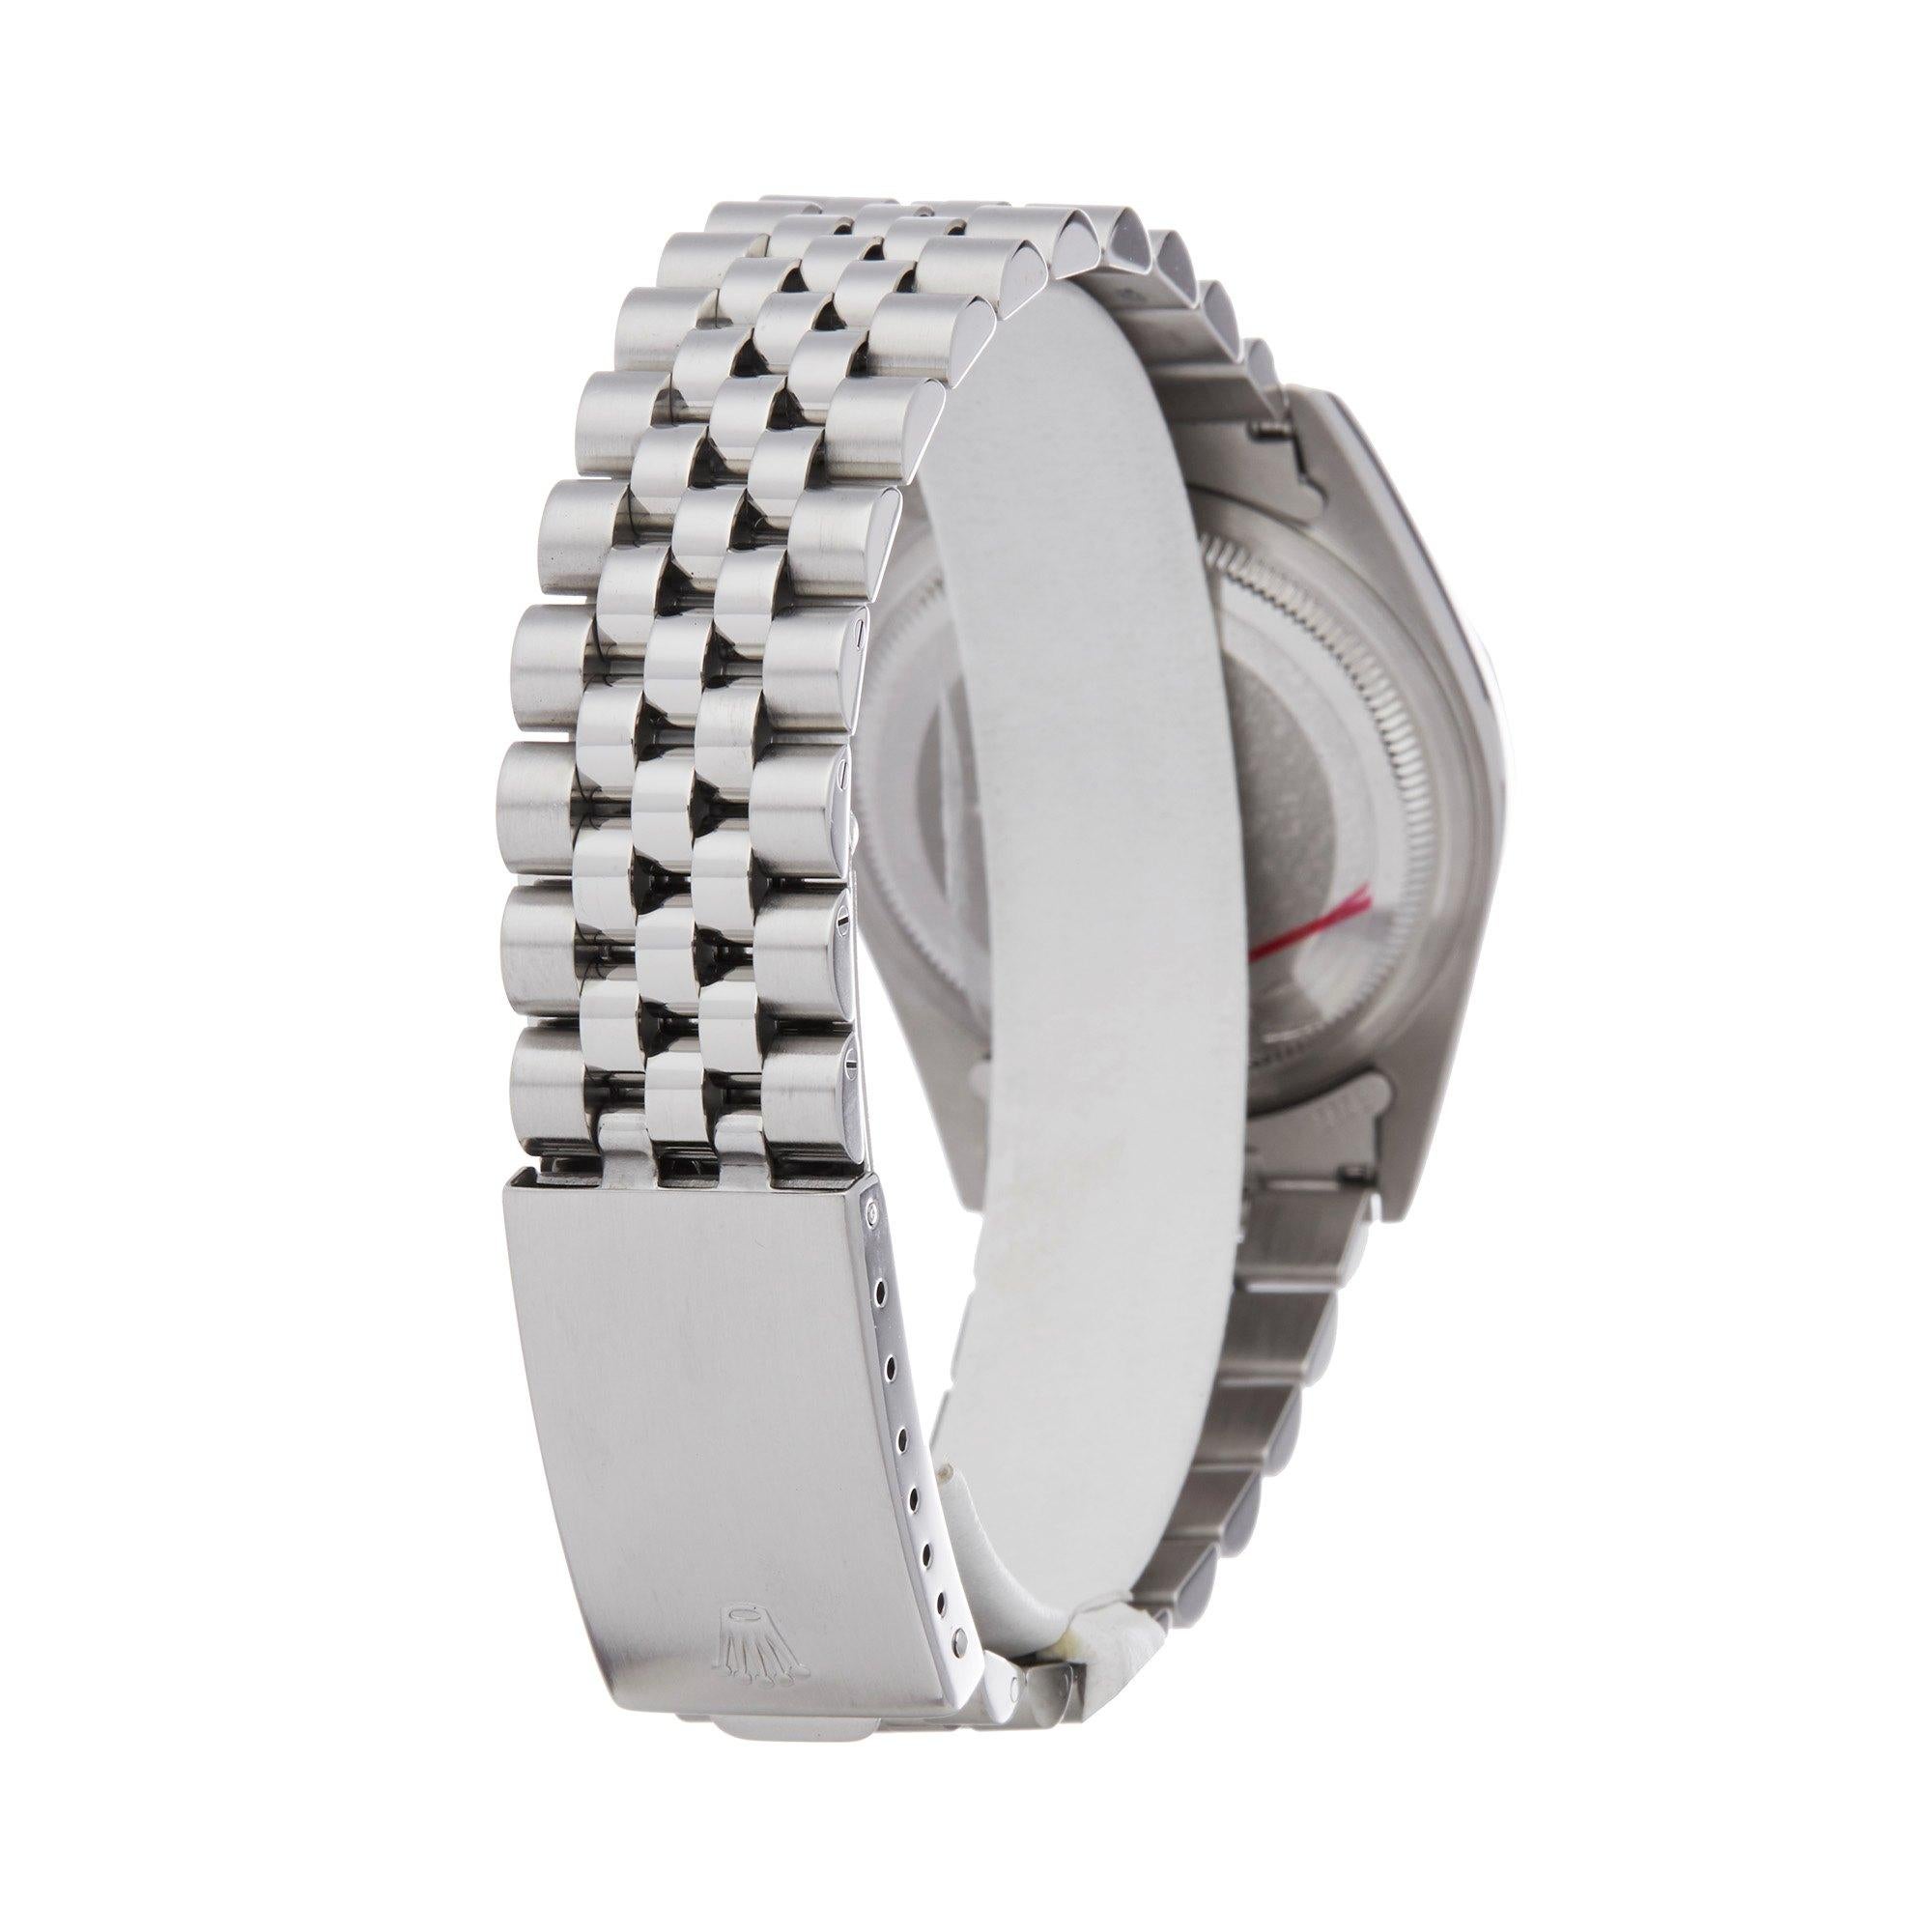 Rolex Datejust 36 16234 Unisex Stainless Steel Watch 2